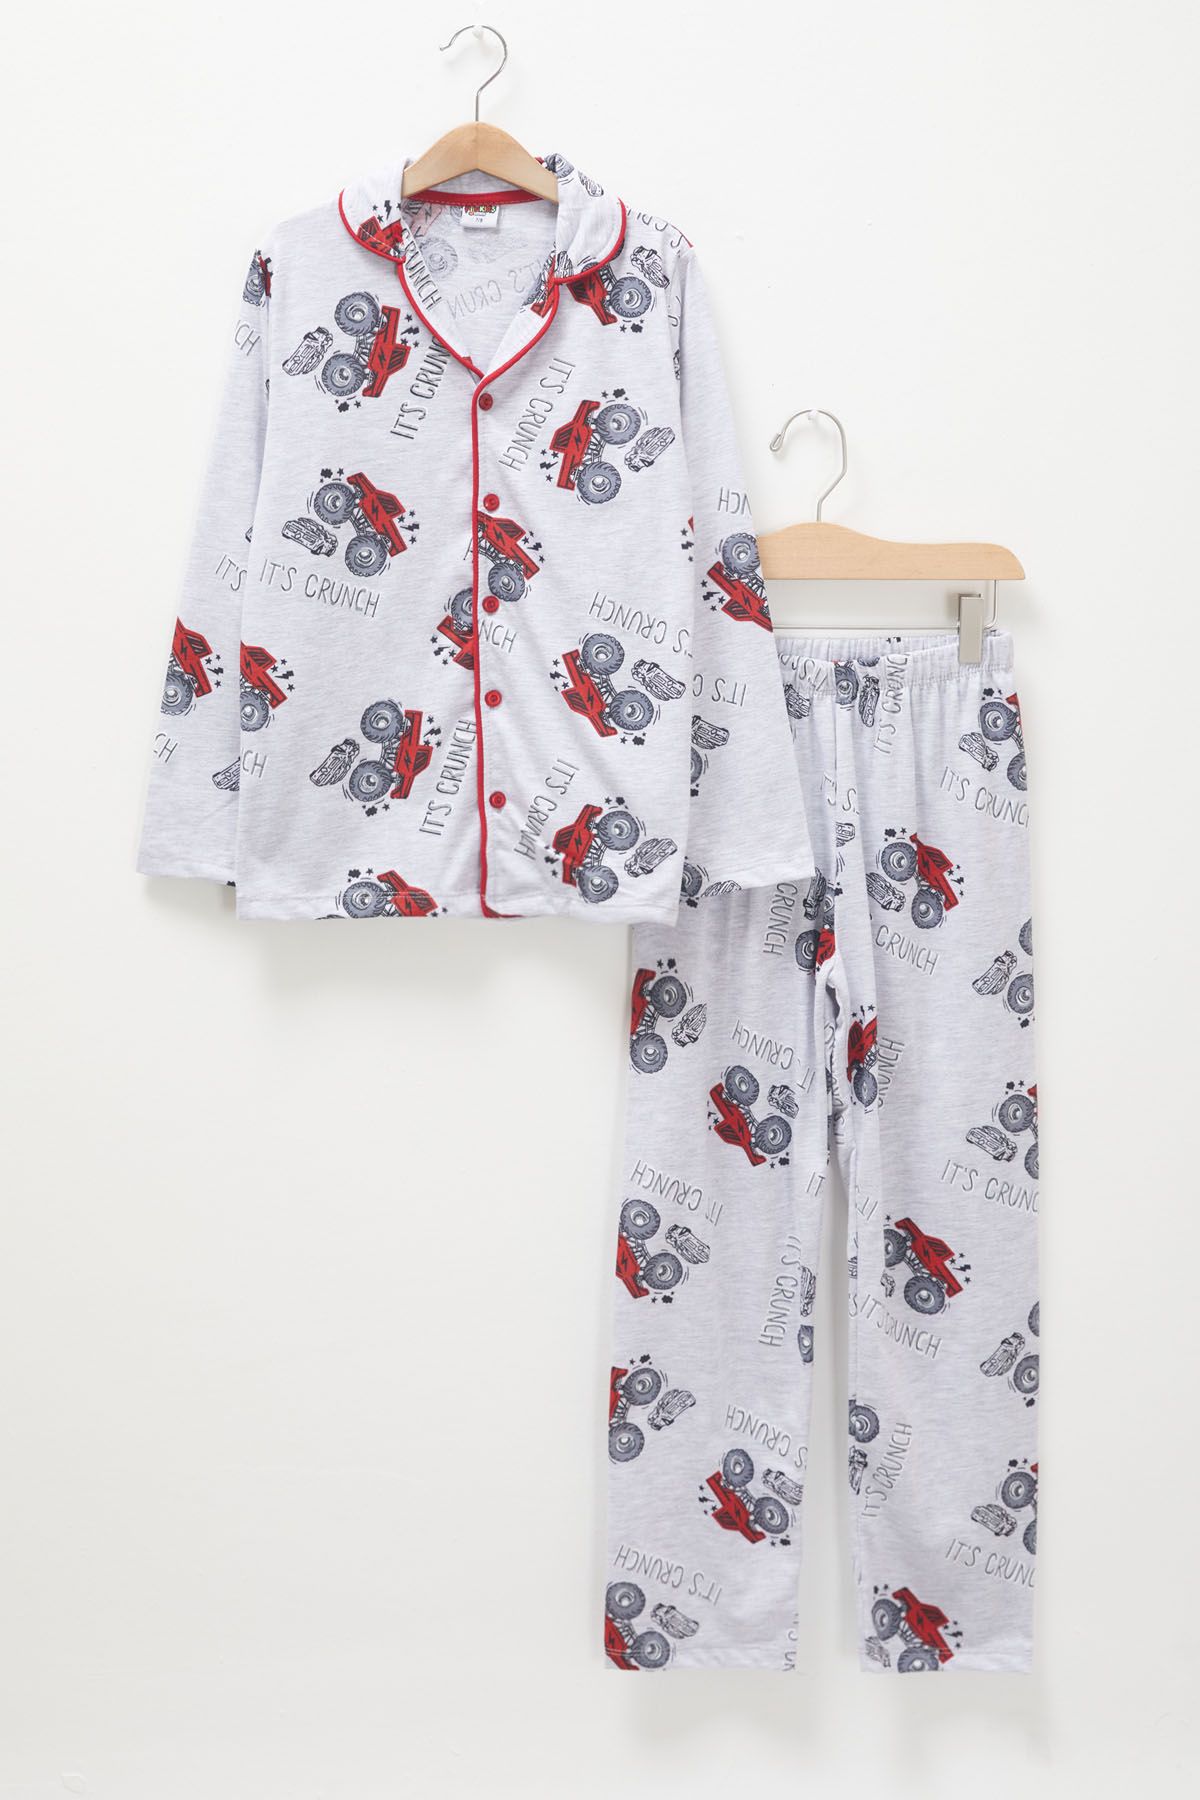 Cansın Mini Kırmızı Canavar Kamyon Baskılı Erkek Çocuk Pijama Takımı 17665